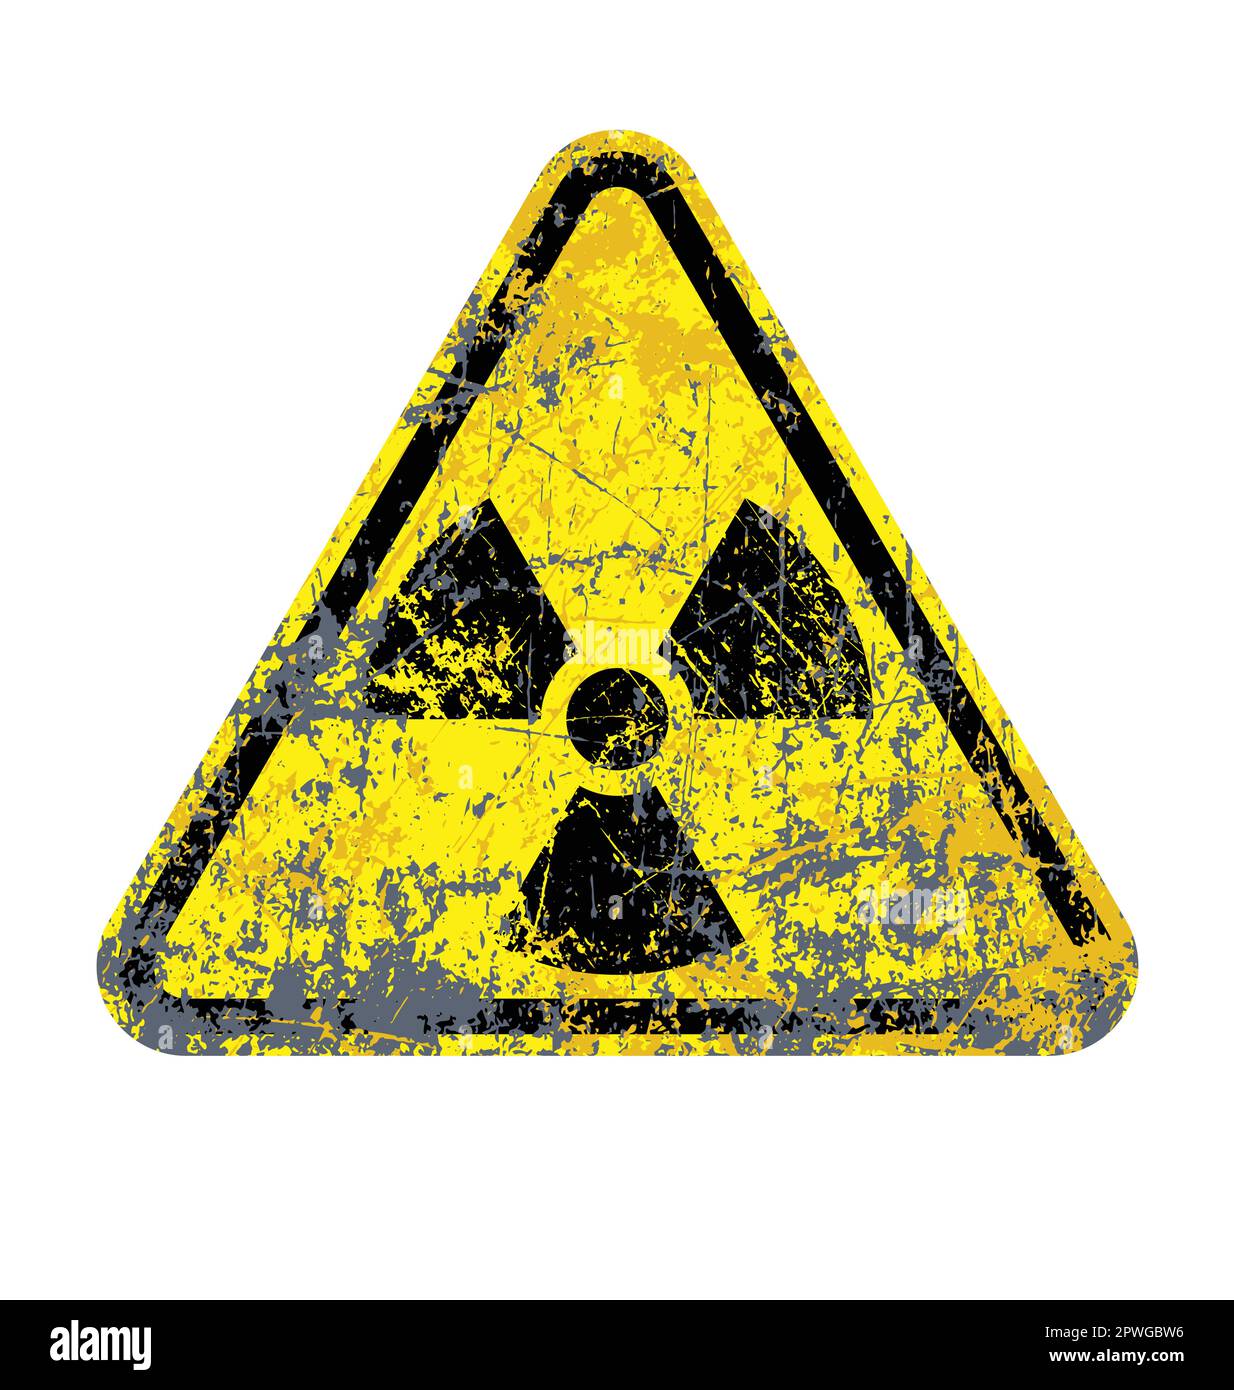 classico simbolo di allarme radioattivo trifoglio in triangolo giallo vettore grunge stressato isolato su sfondo bianco Illustrazione Vettoriale